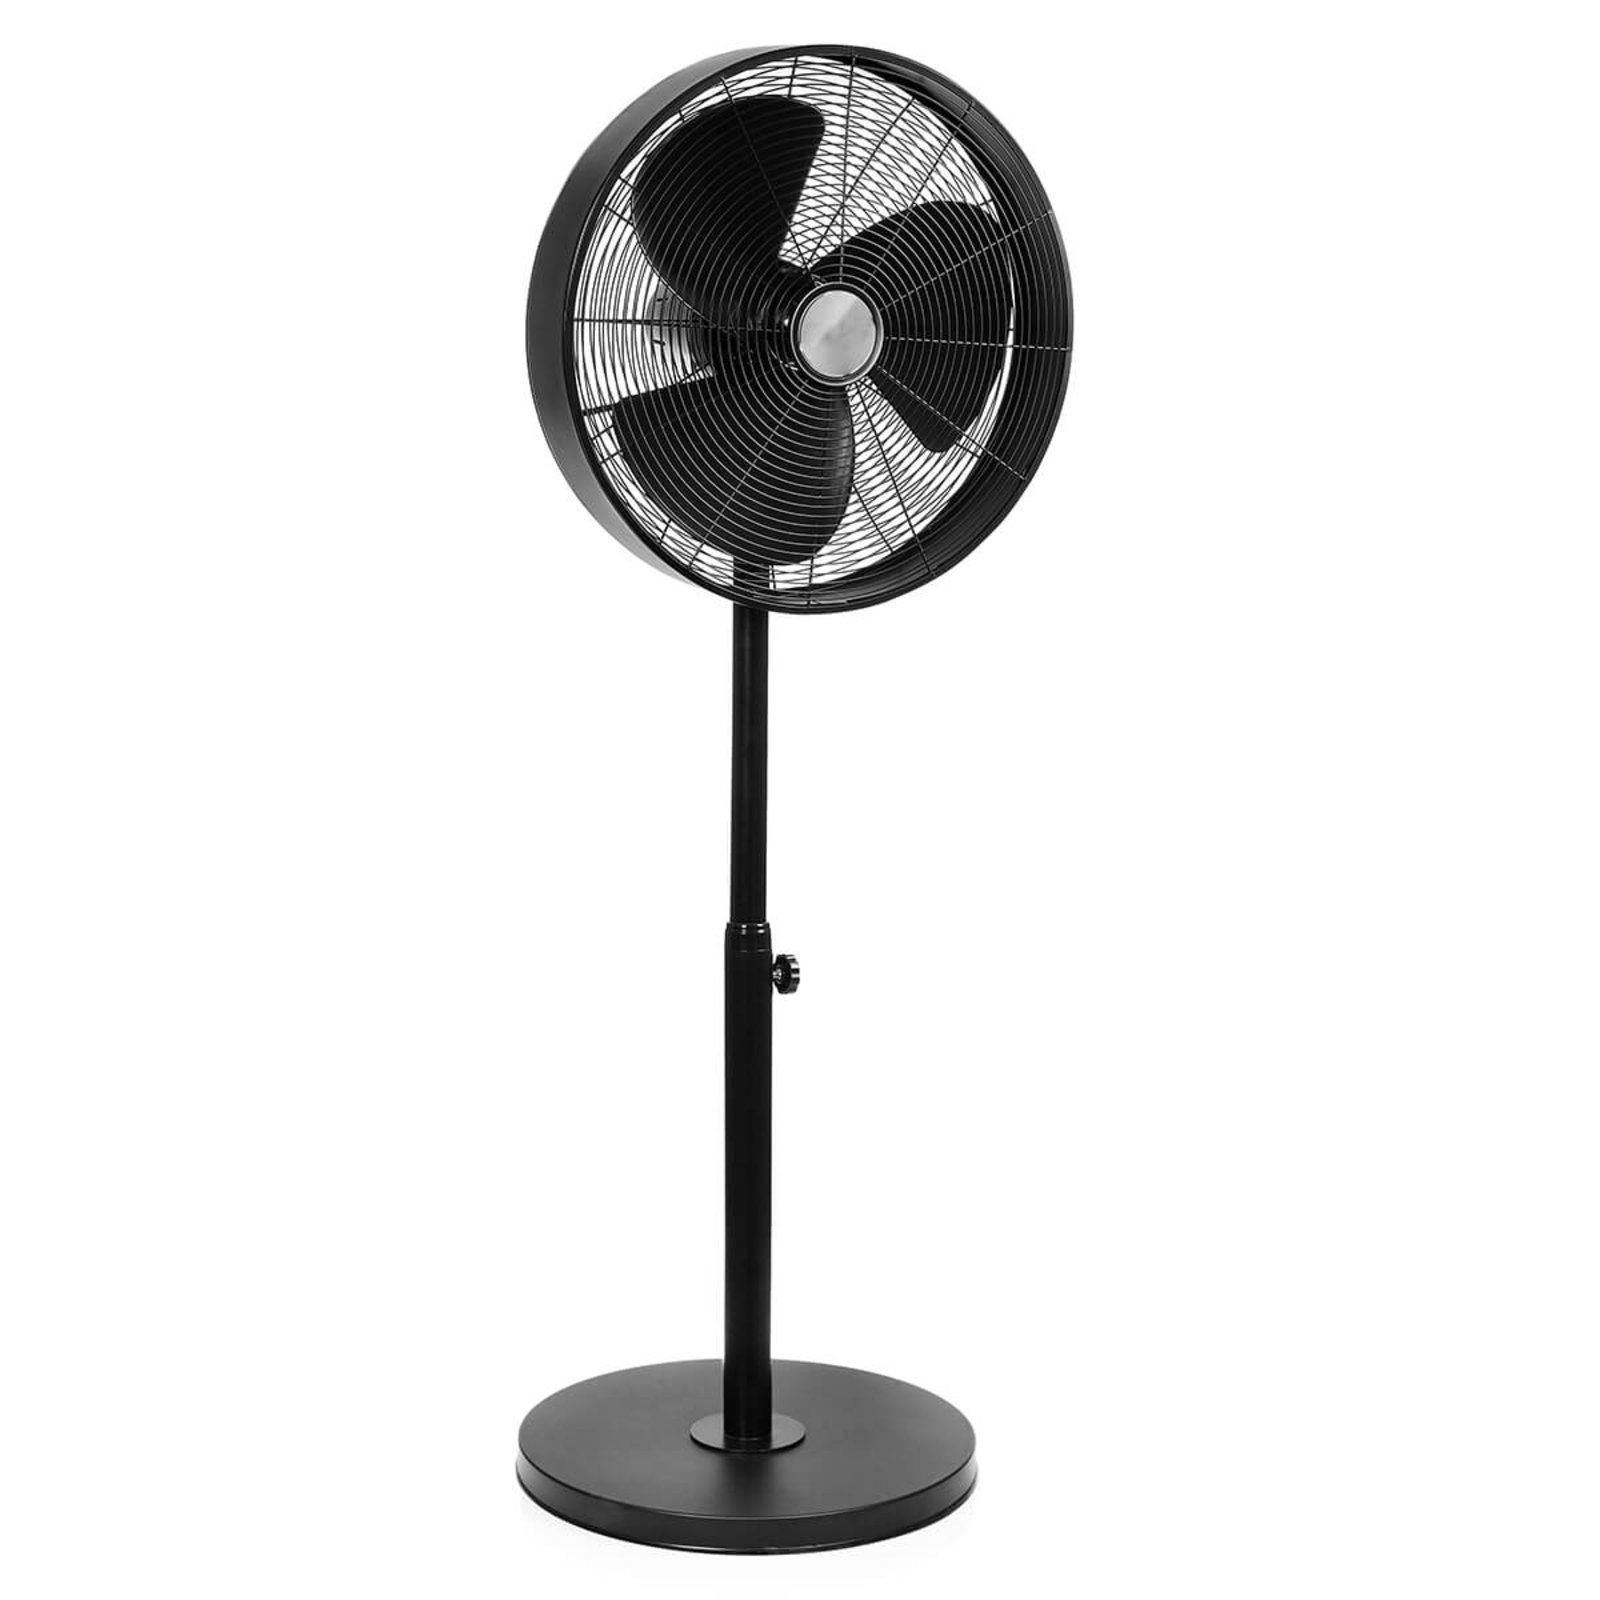 VE5929 modern pedestal fan in black